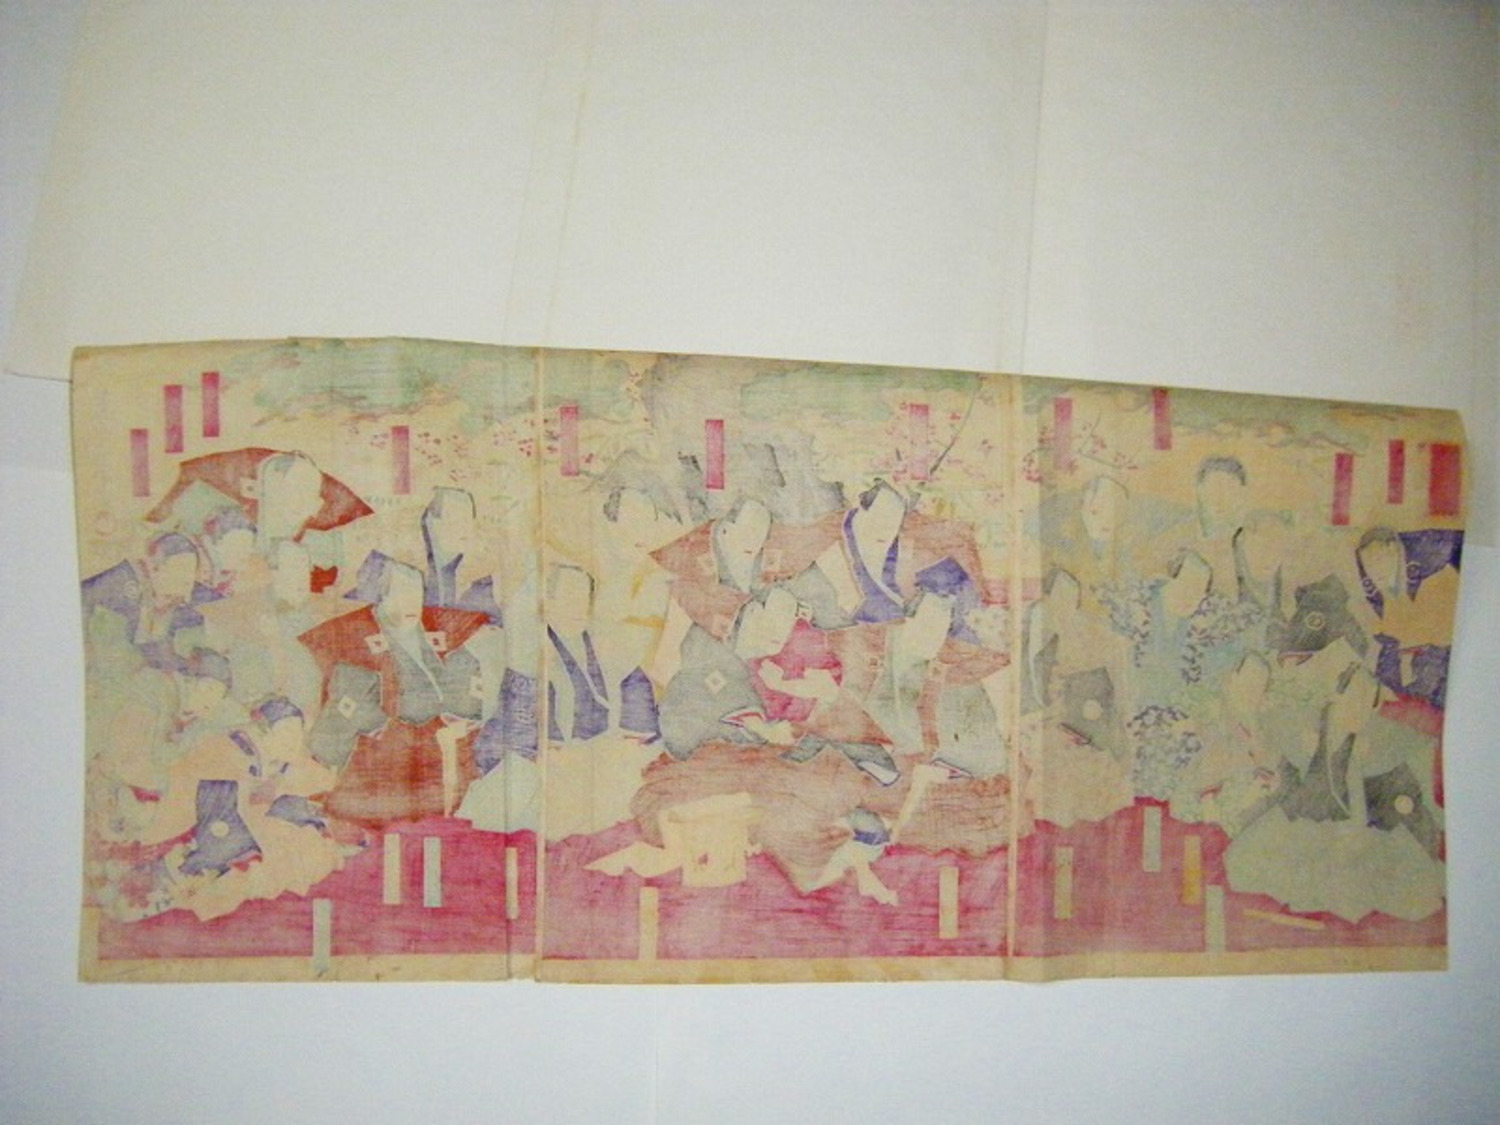 明治 初期 浮世絵 国周 俳優 番付 歌舞伎「千歳座 初始之図 3枚組」ukiyoe 彩色 木版画